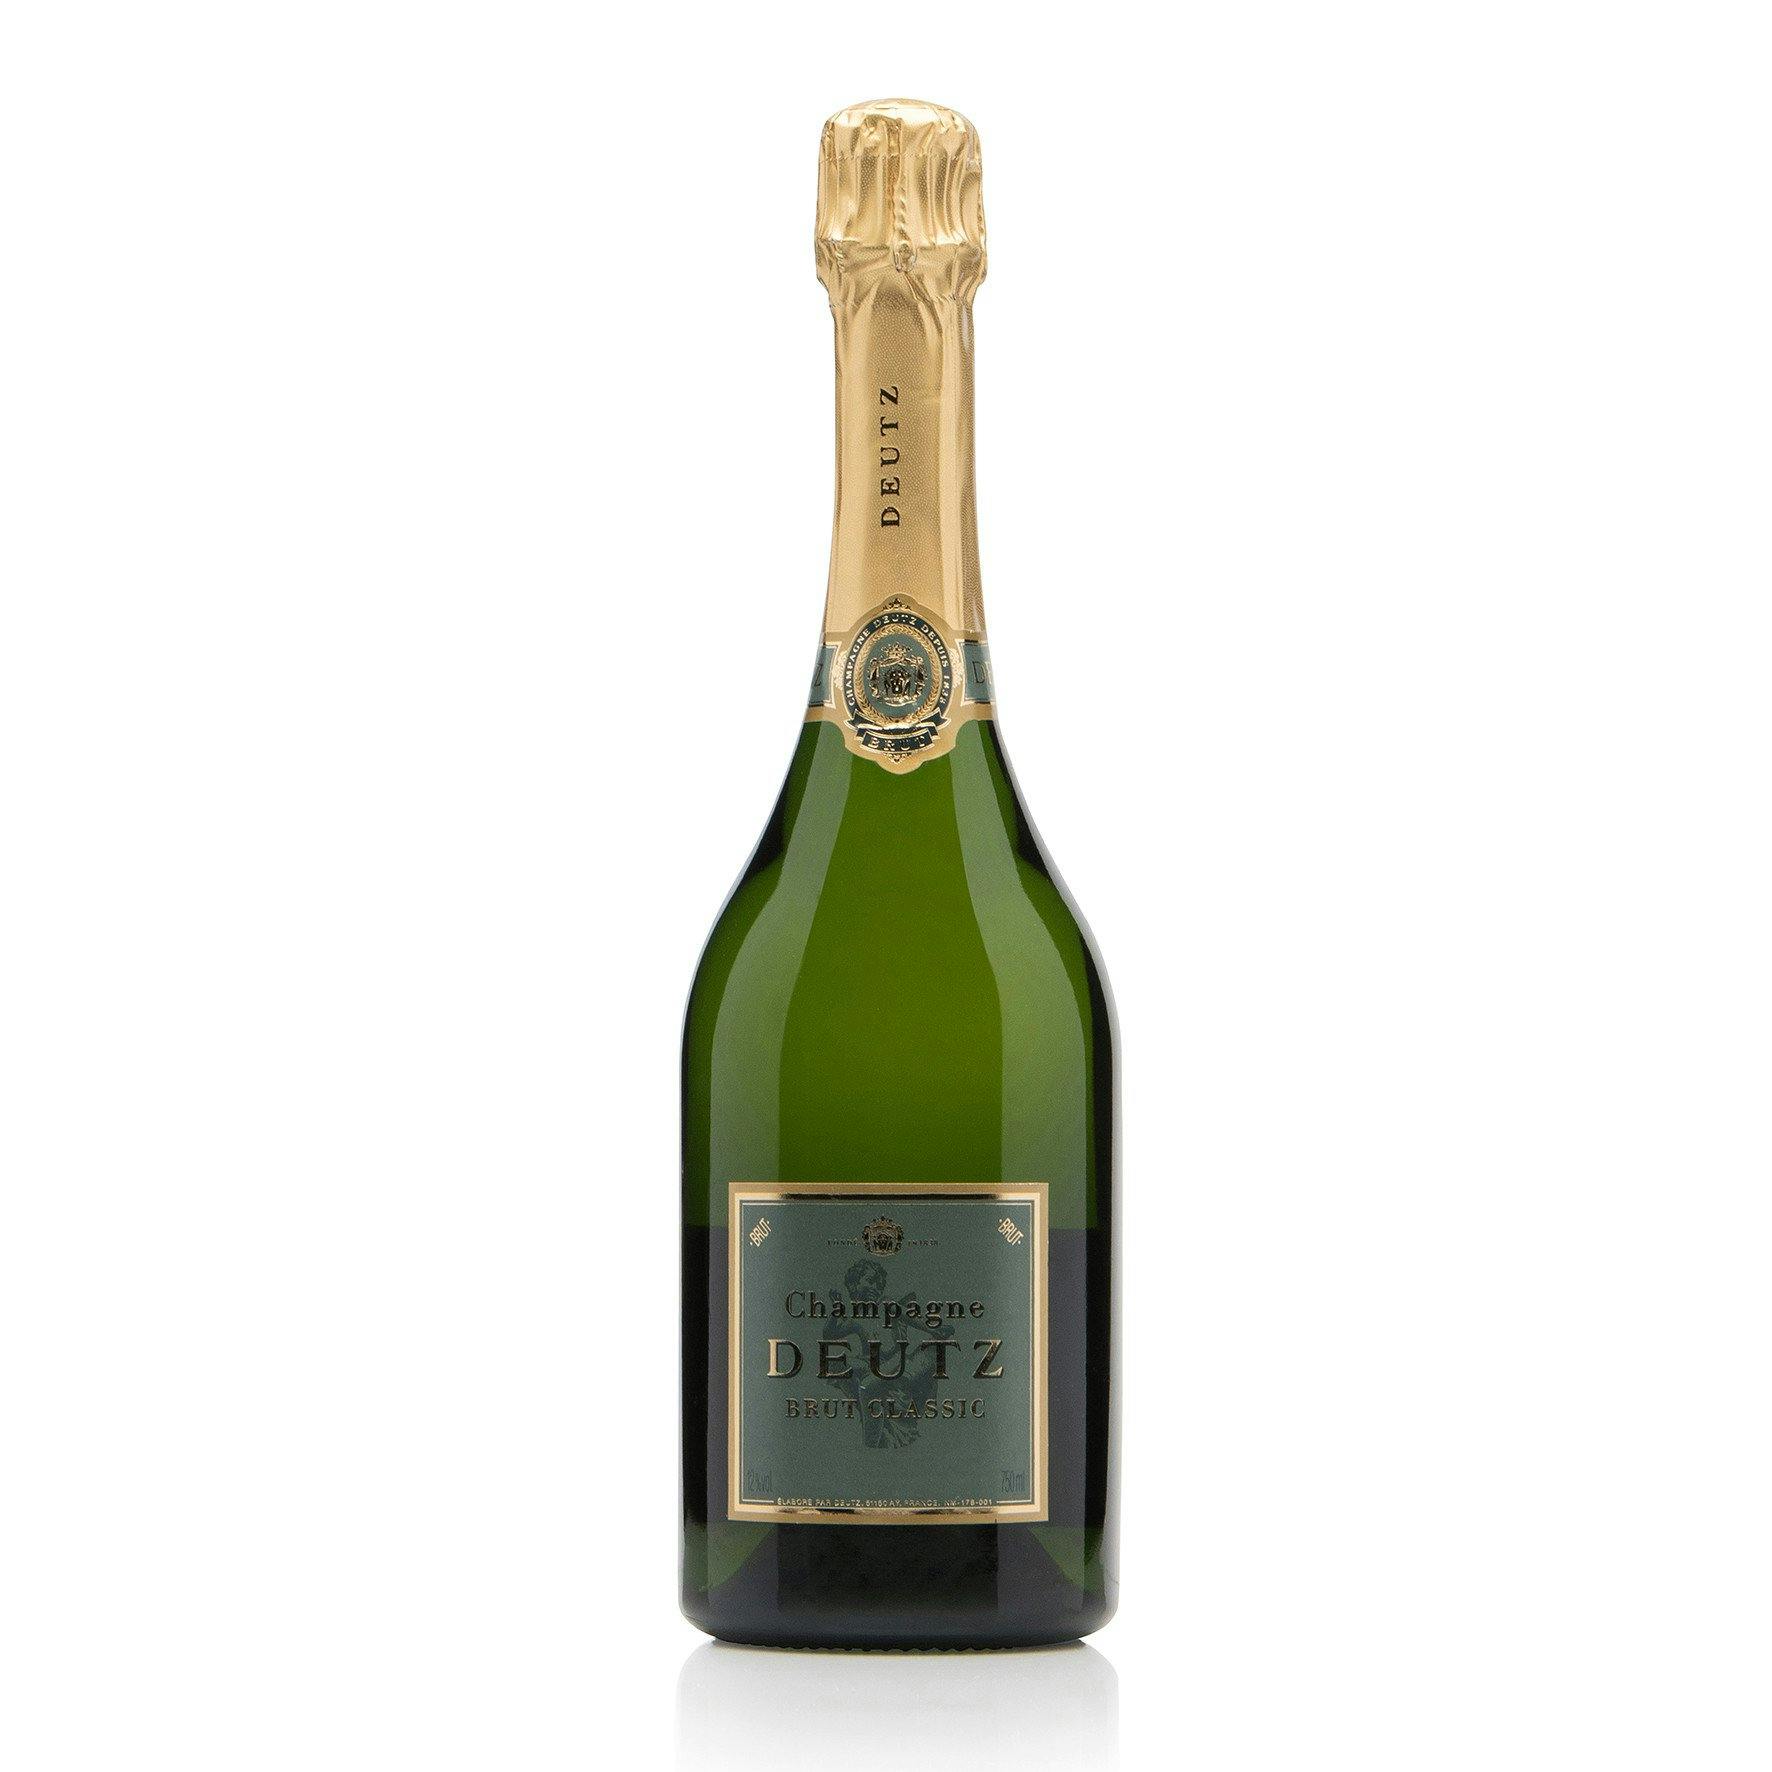 Deutz Brut Classic - Premier Champagne